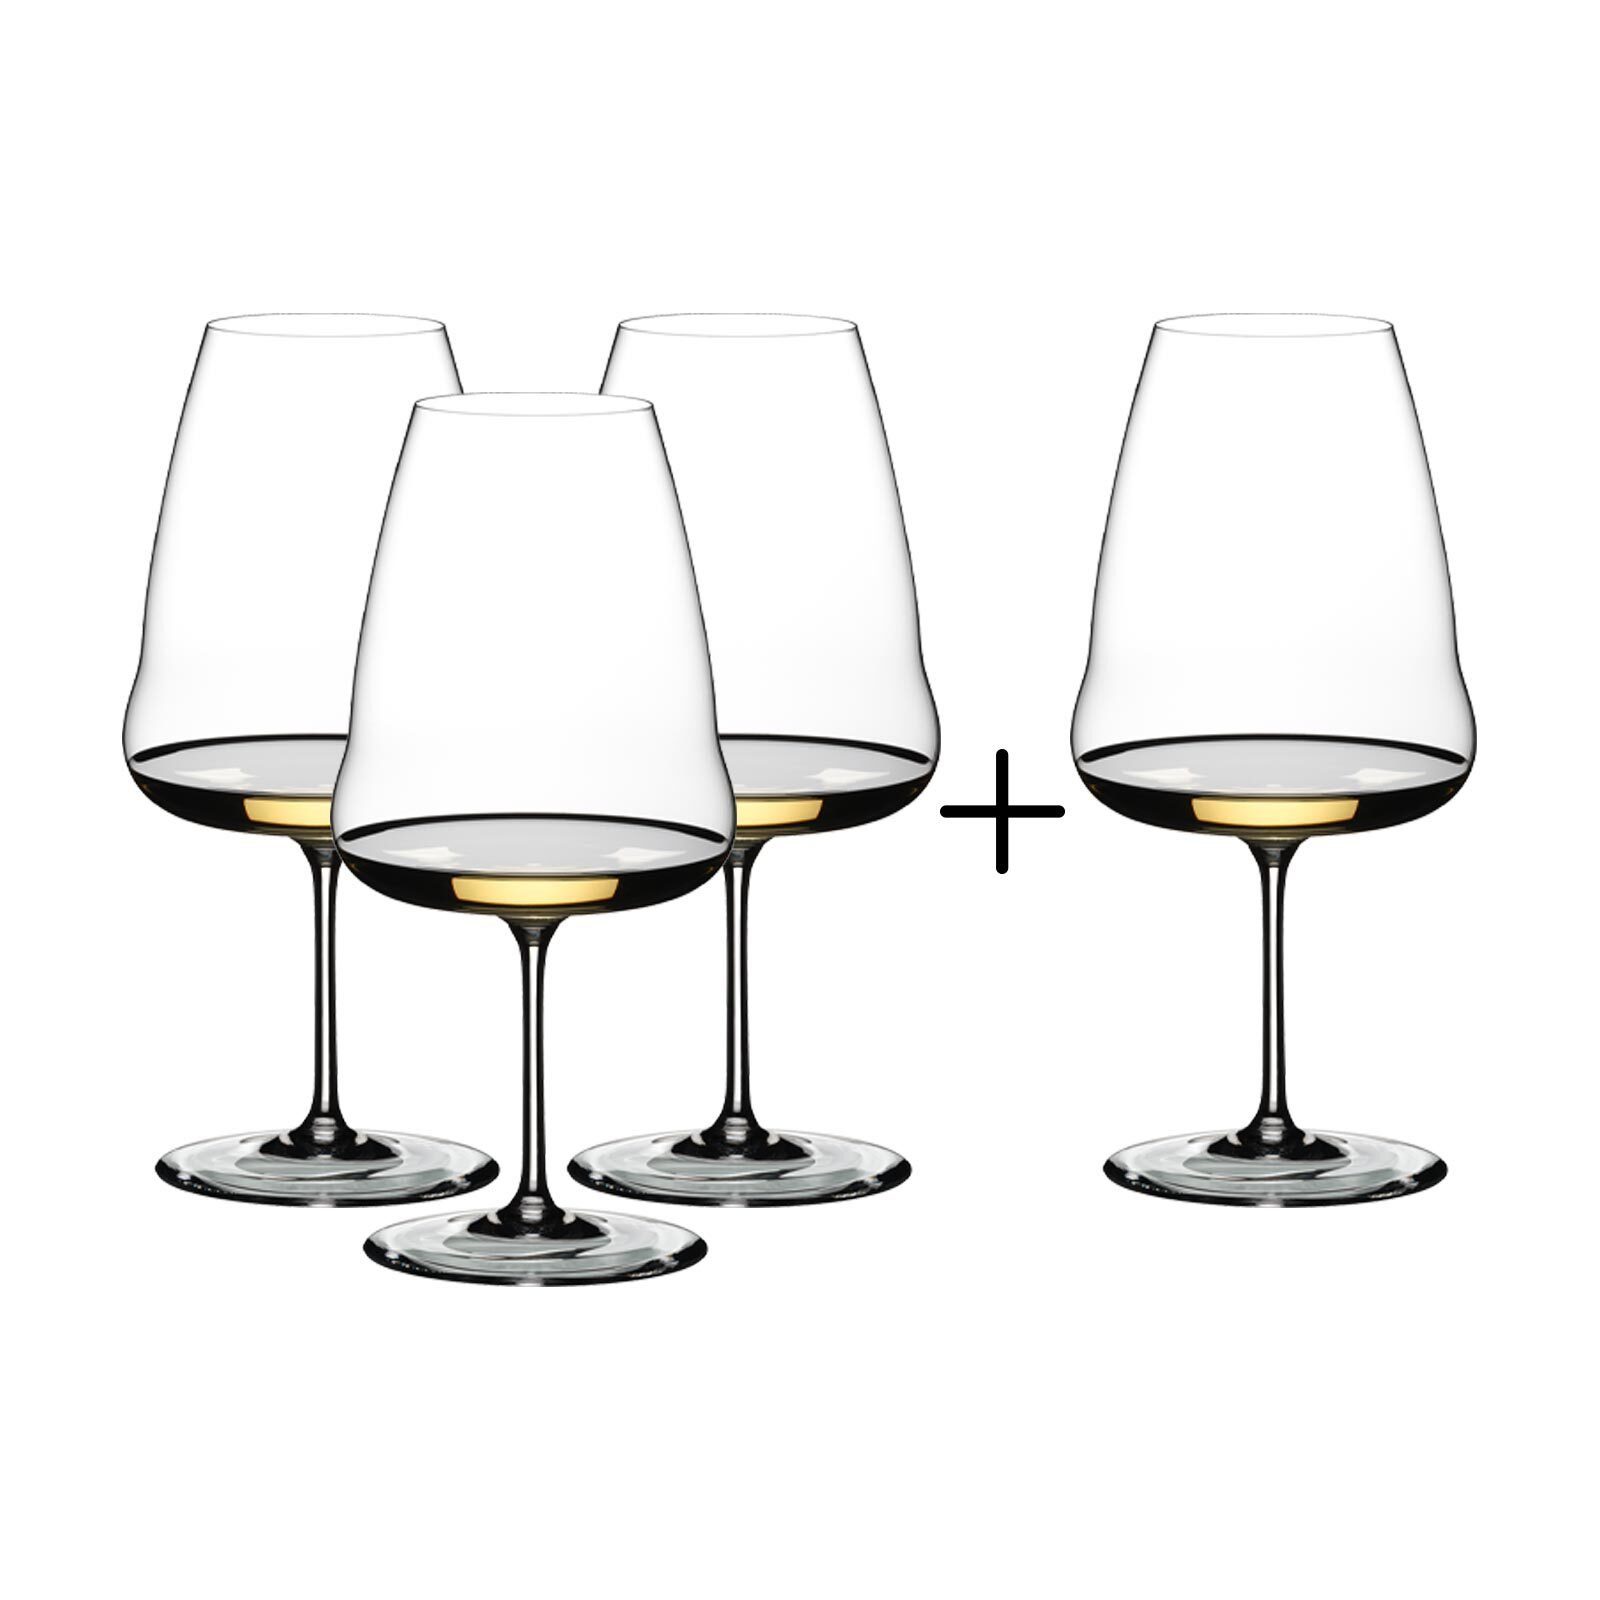 RIEDEL Glas Weißweinglas Riedel Riesling Winewings PAY 3 GET 4